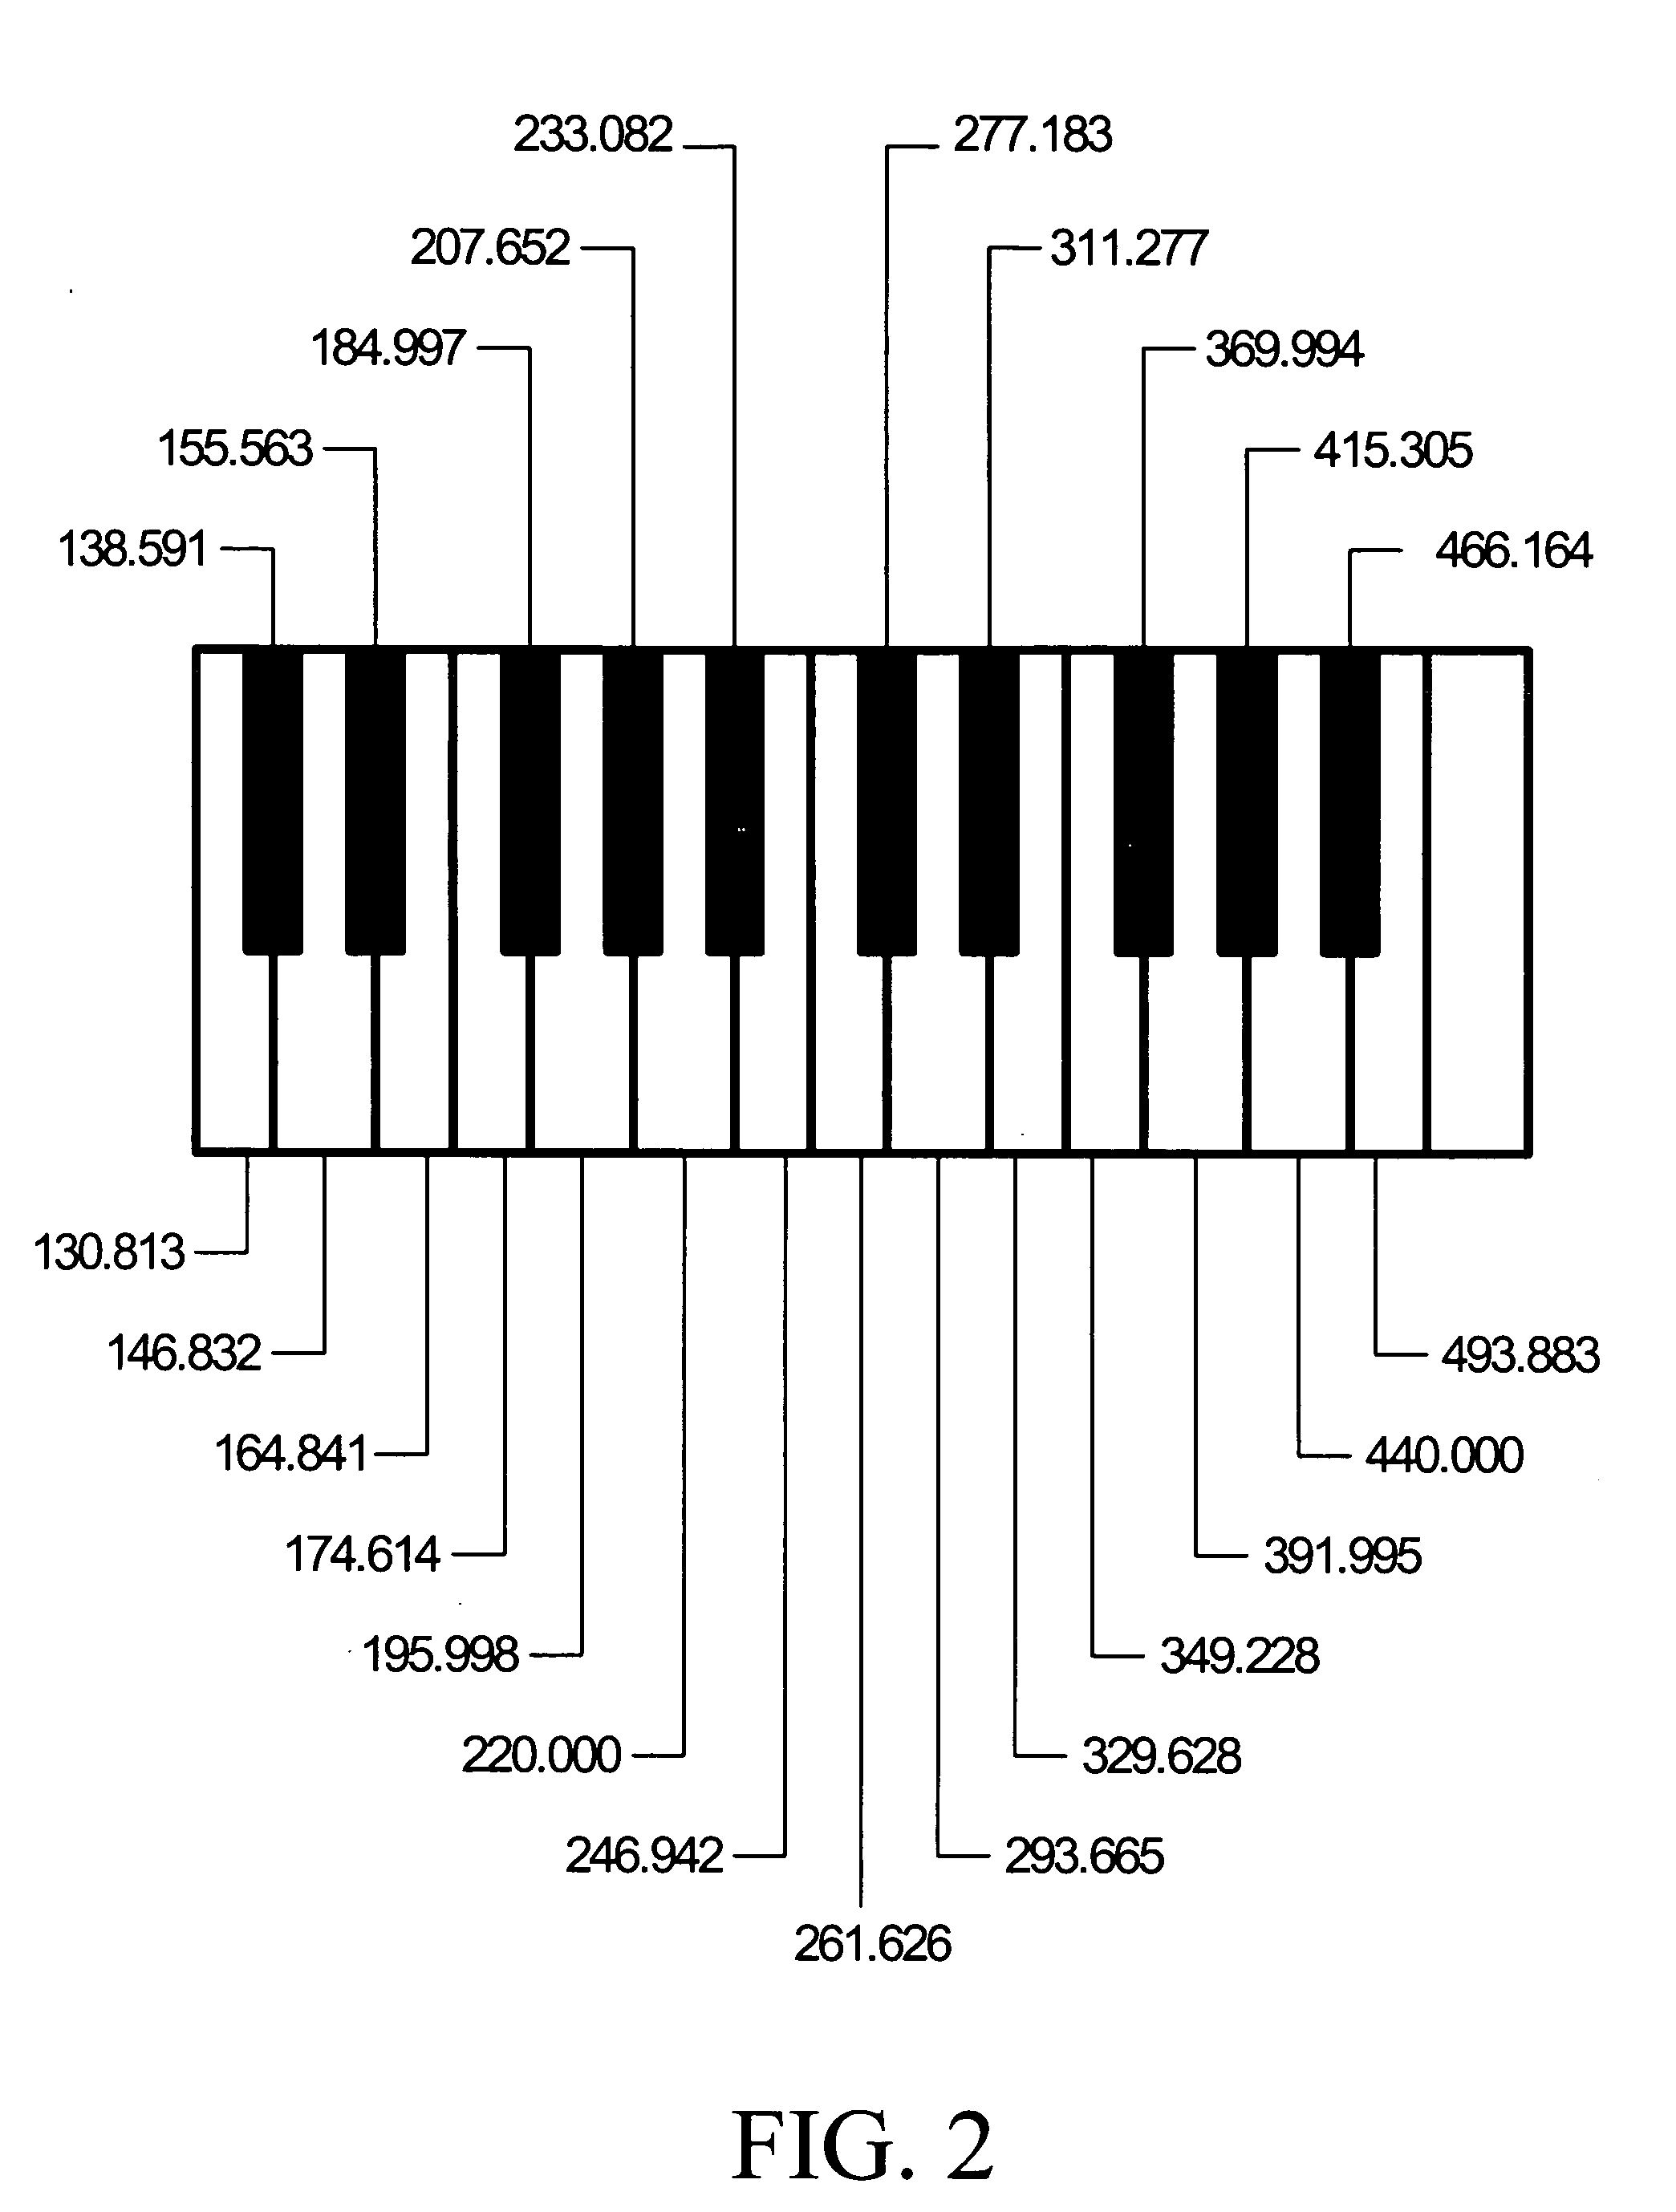 Method and apparatus for karaoke scoring